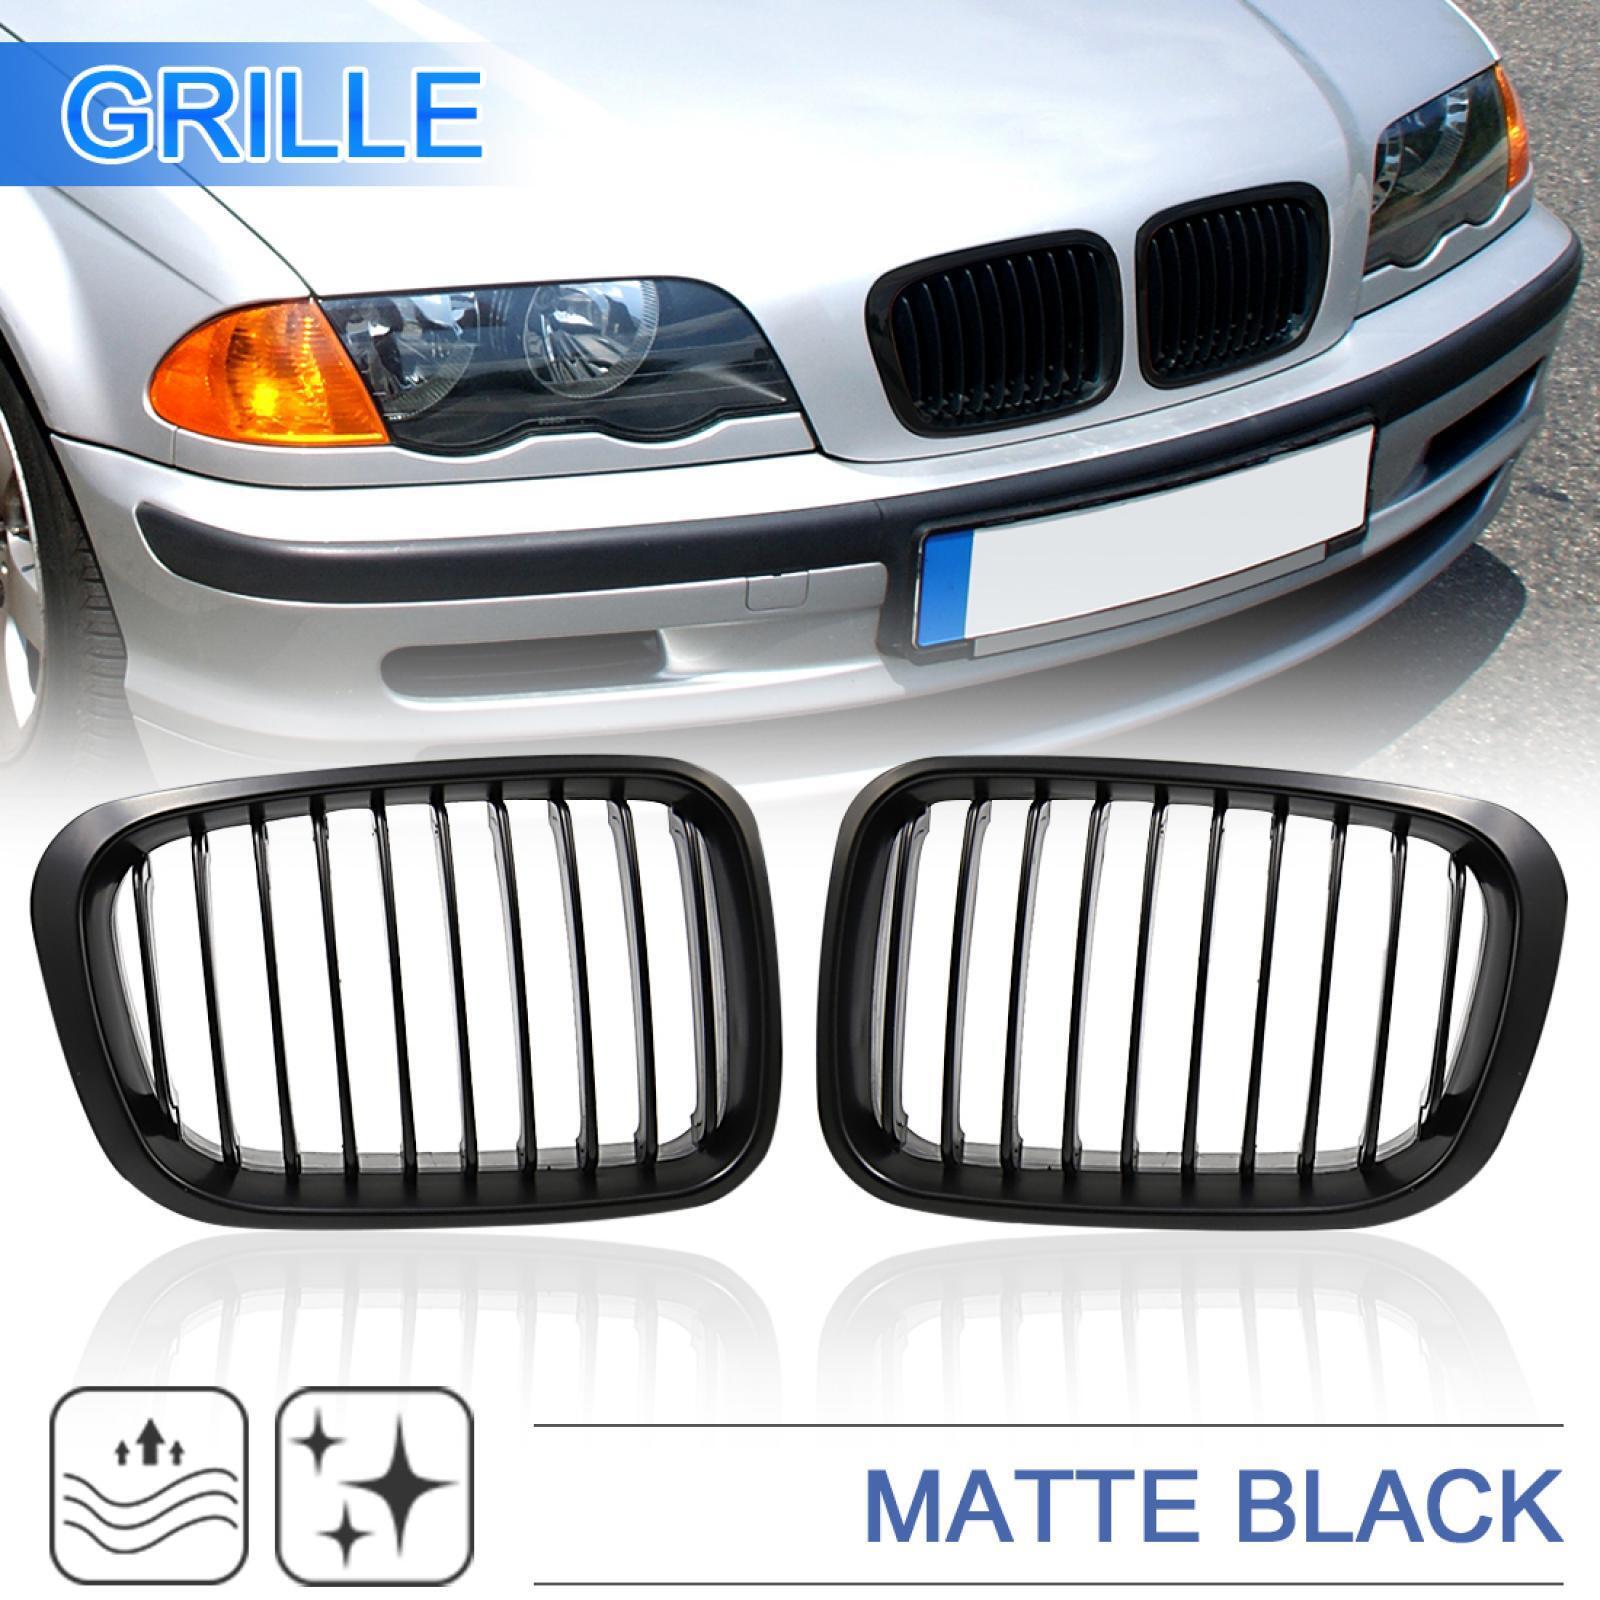 Matte Black Kidney Grille Grill for BMW E46 320i 323i 325i 328i 330i 4Door 2001